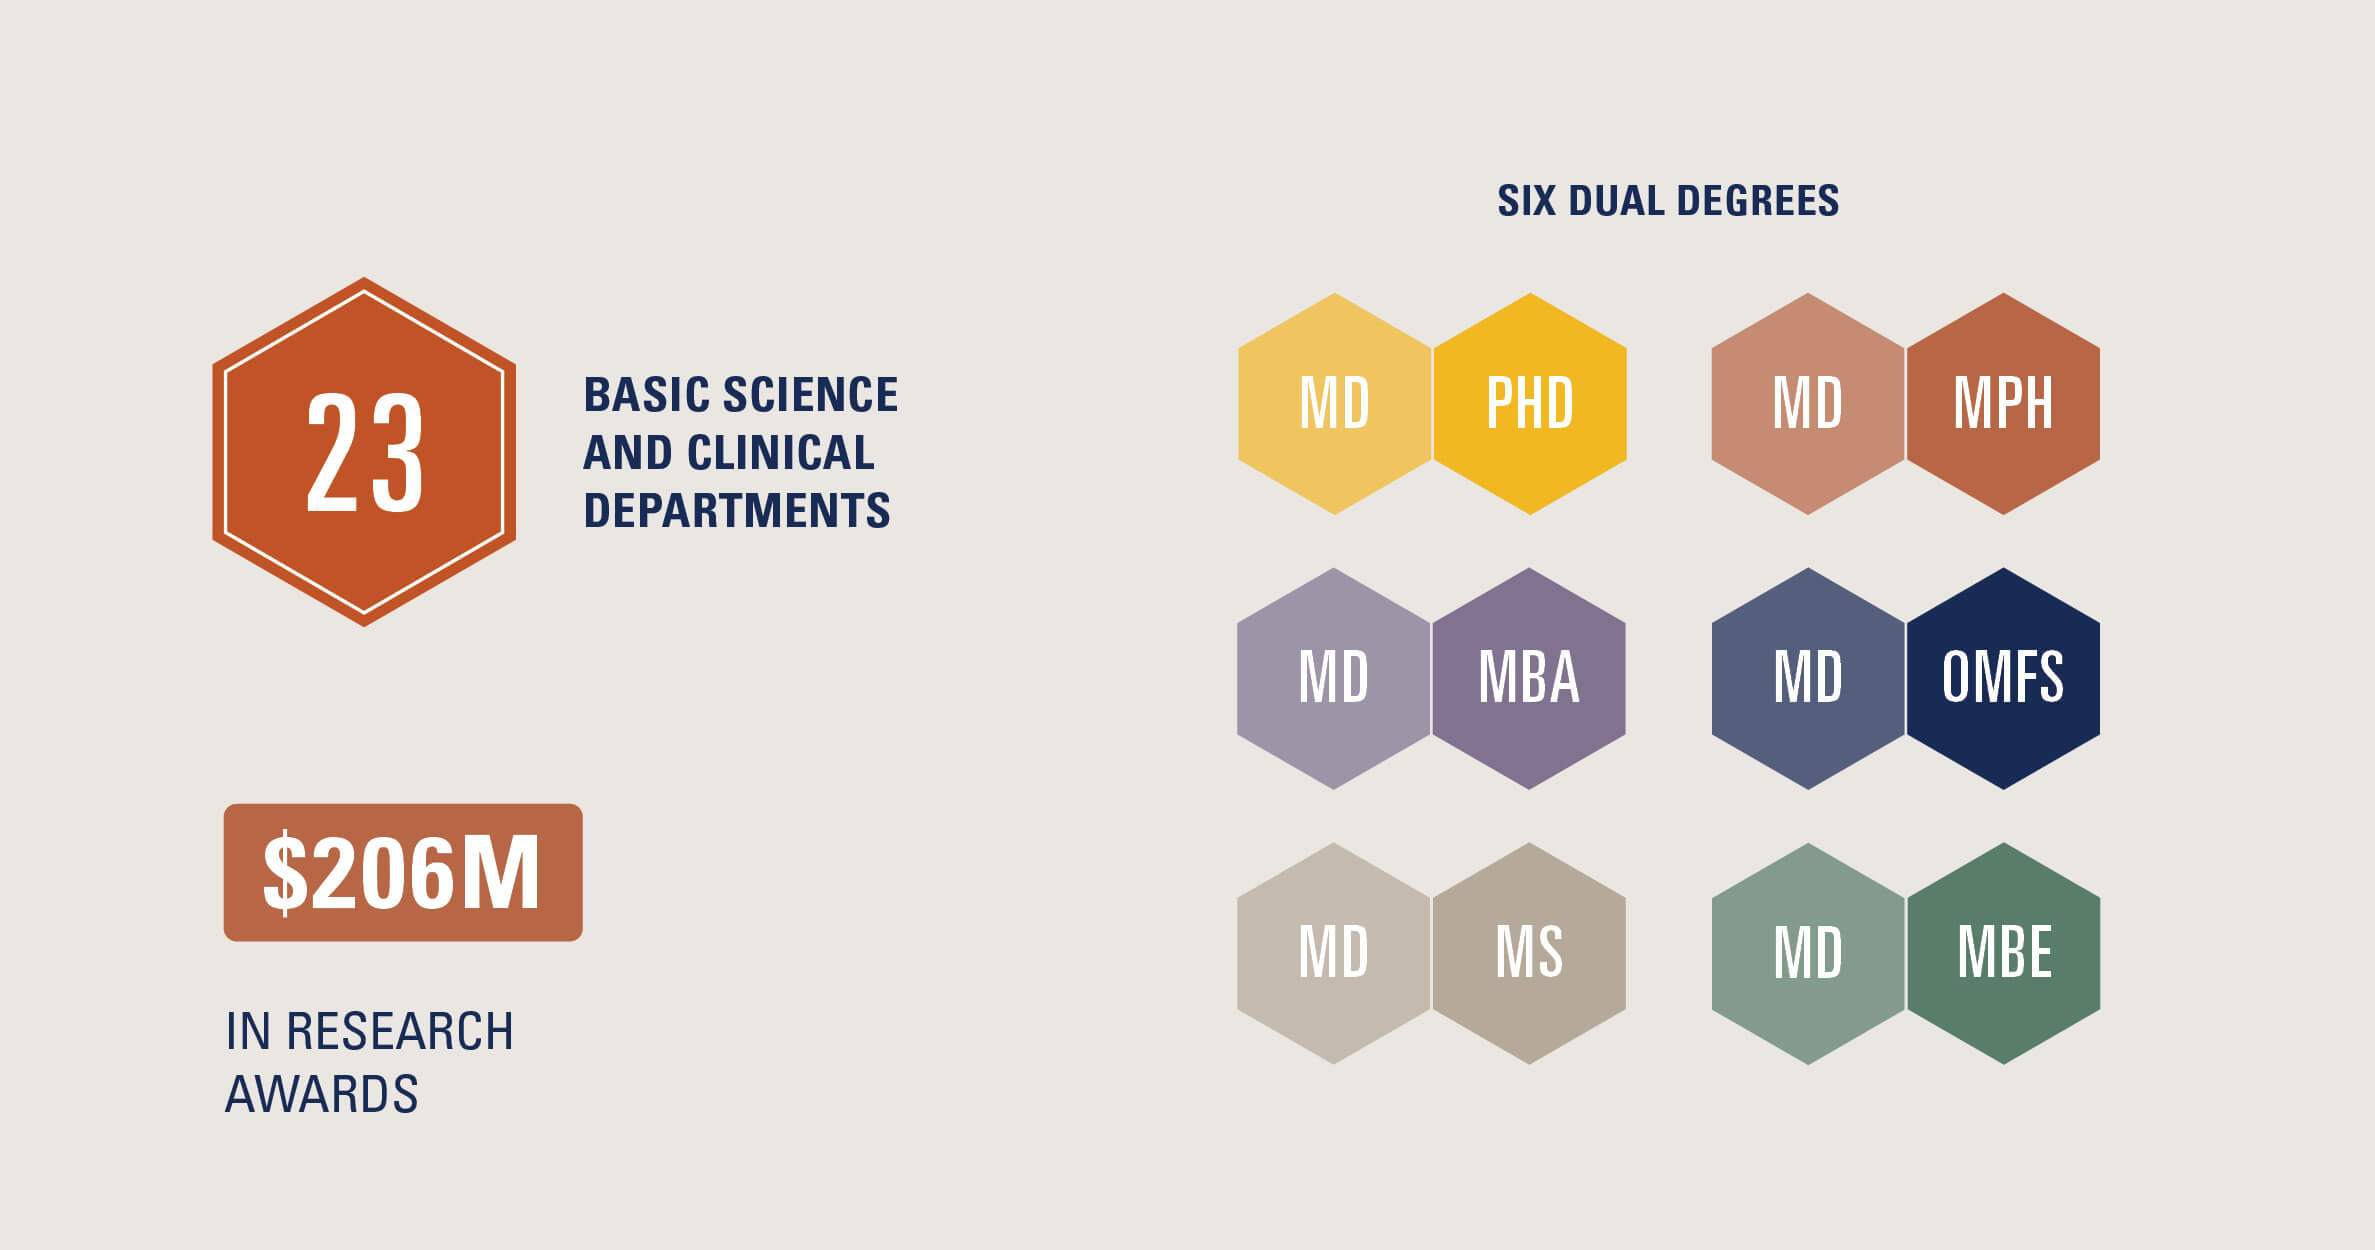 统计代表六个双学位s including MD PHD, MD MPH, MD MBA, MD OMFS, MD MS and MD MBE